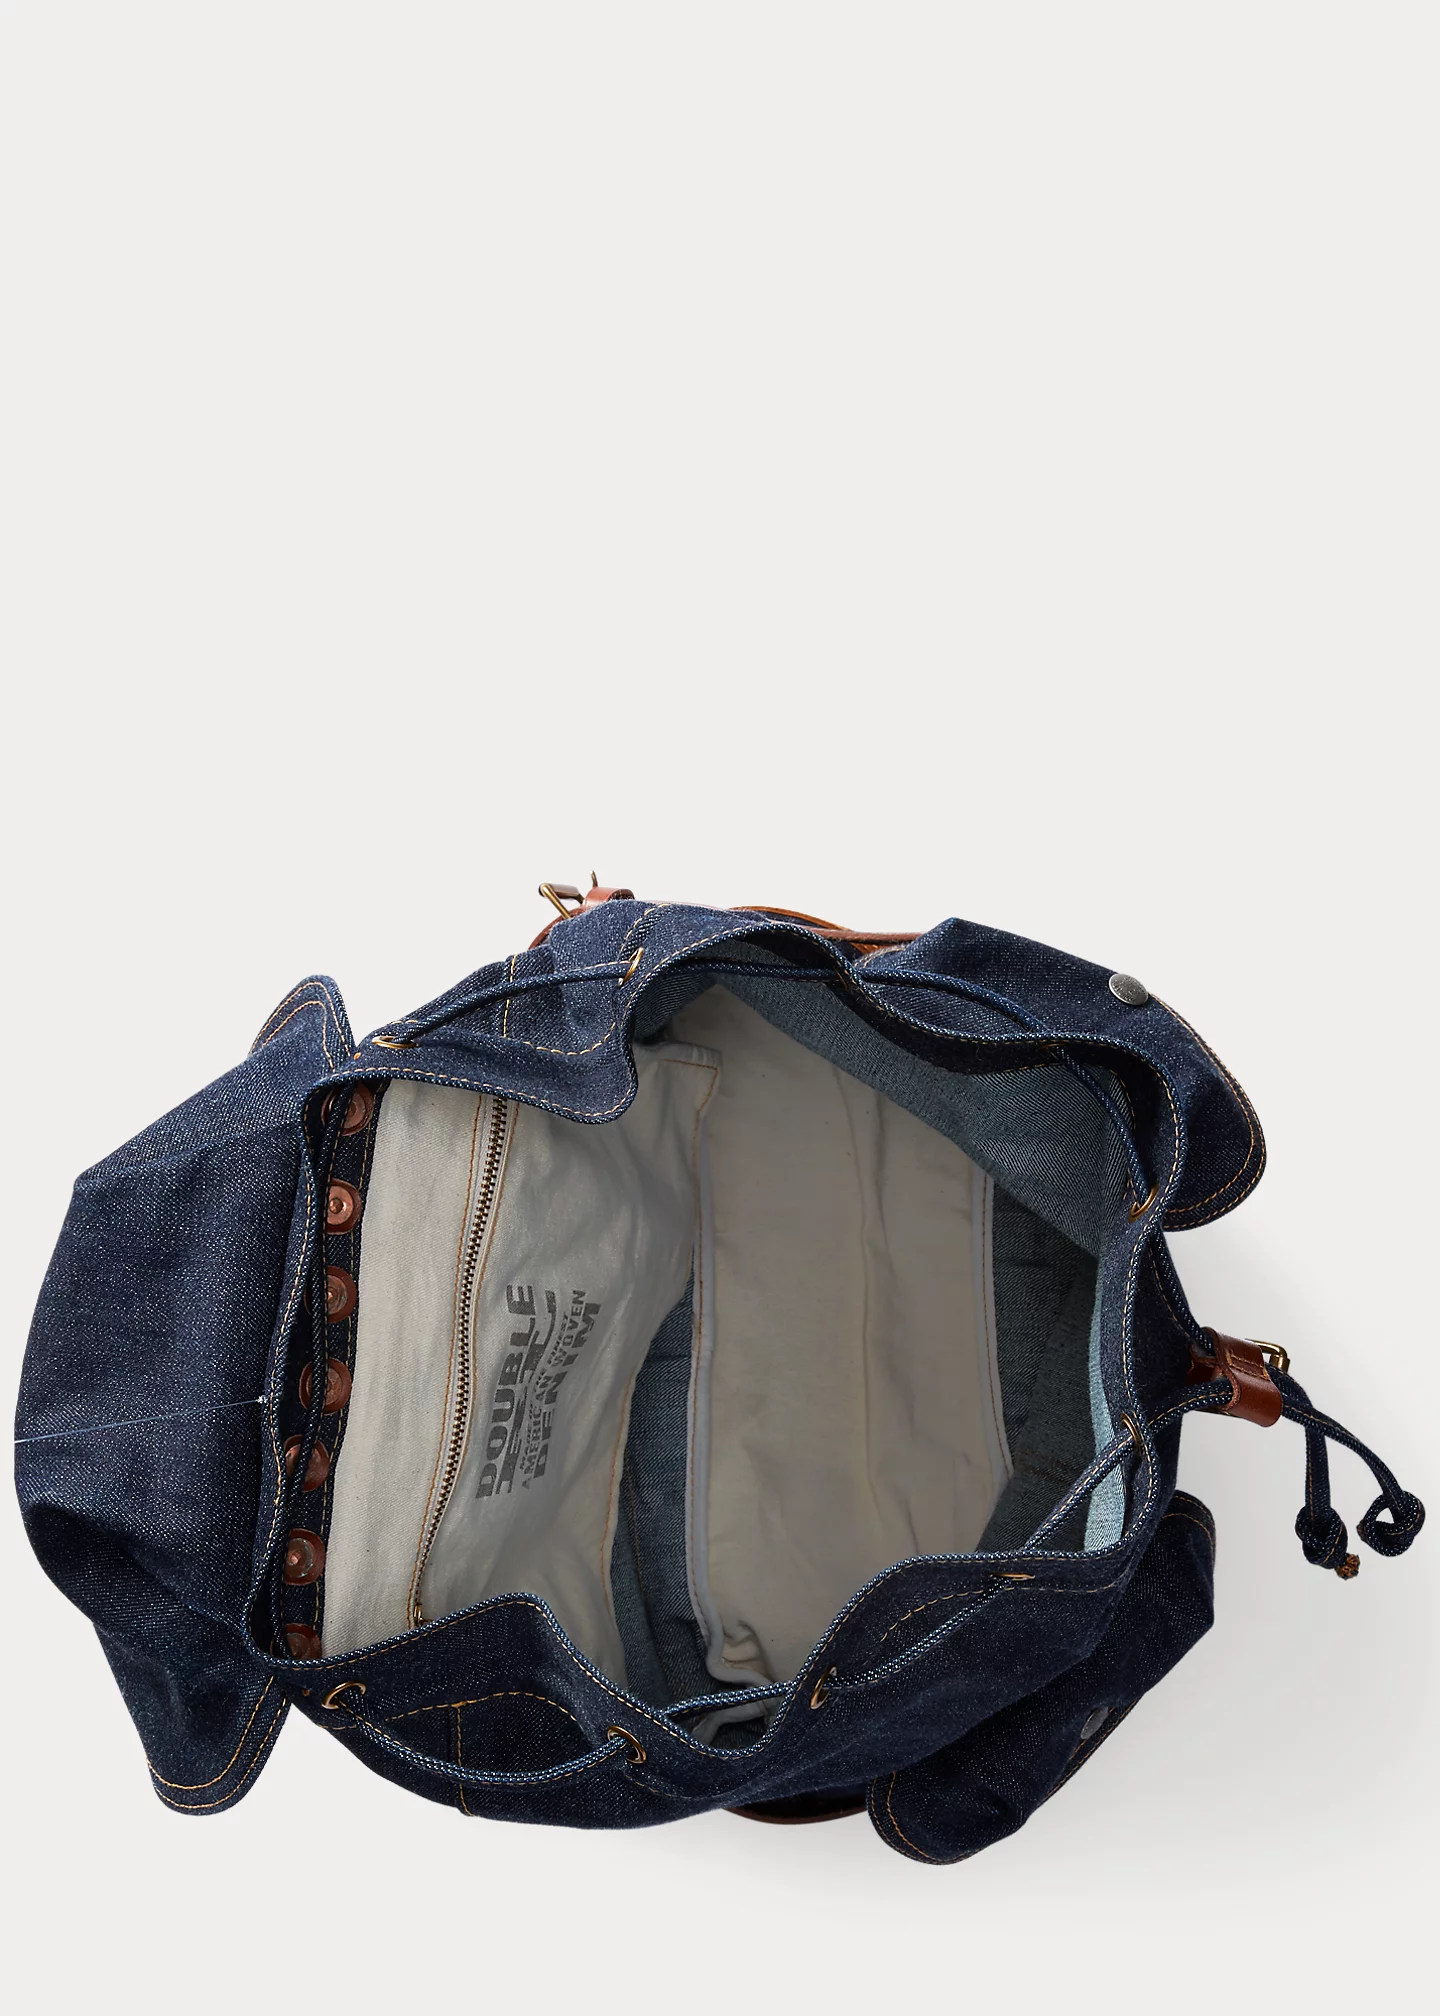 stylish handbagsDenim Rucksack-,$48.39-2